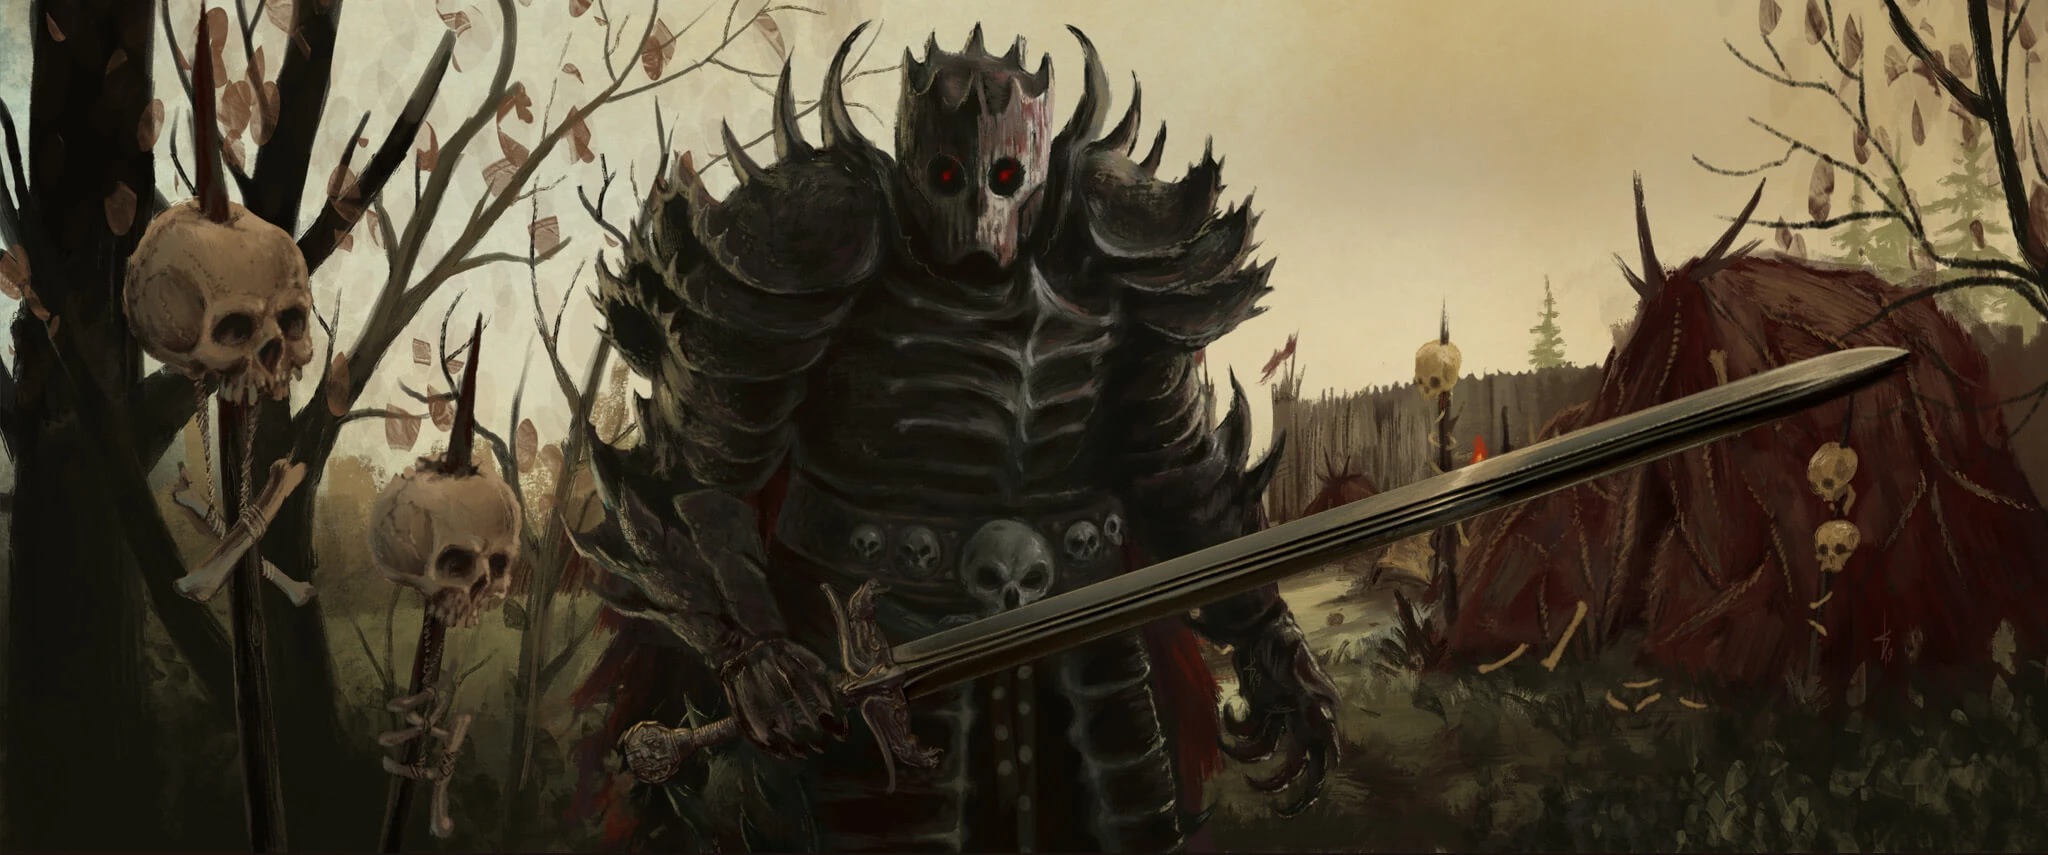 death-knight-banner_x1024